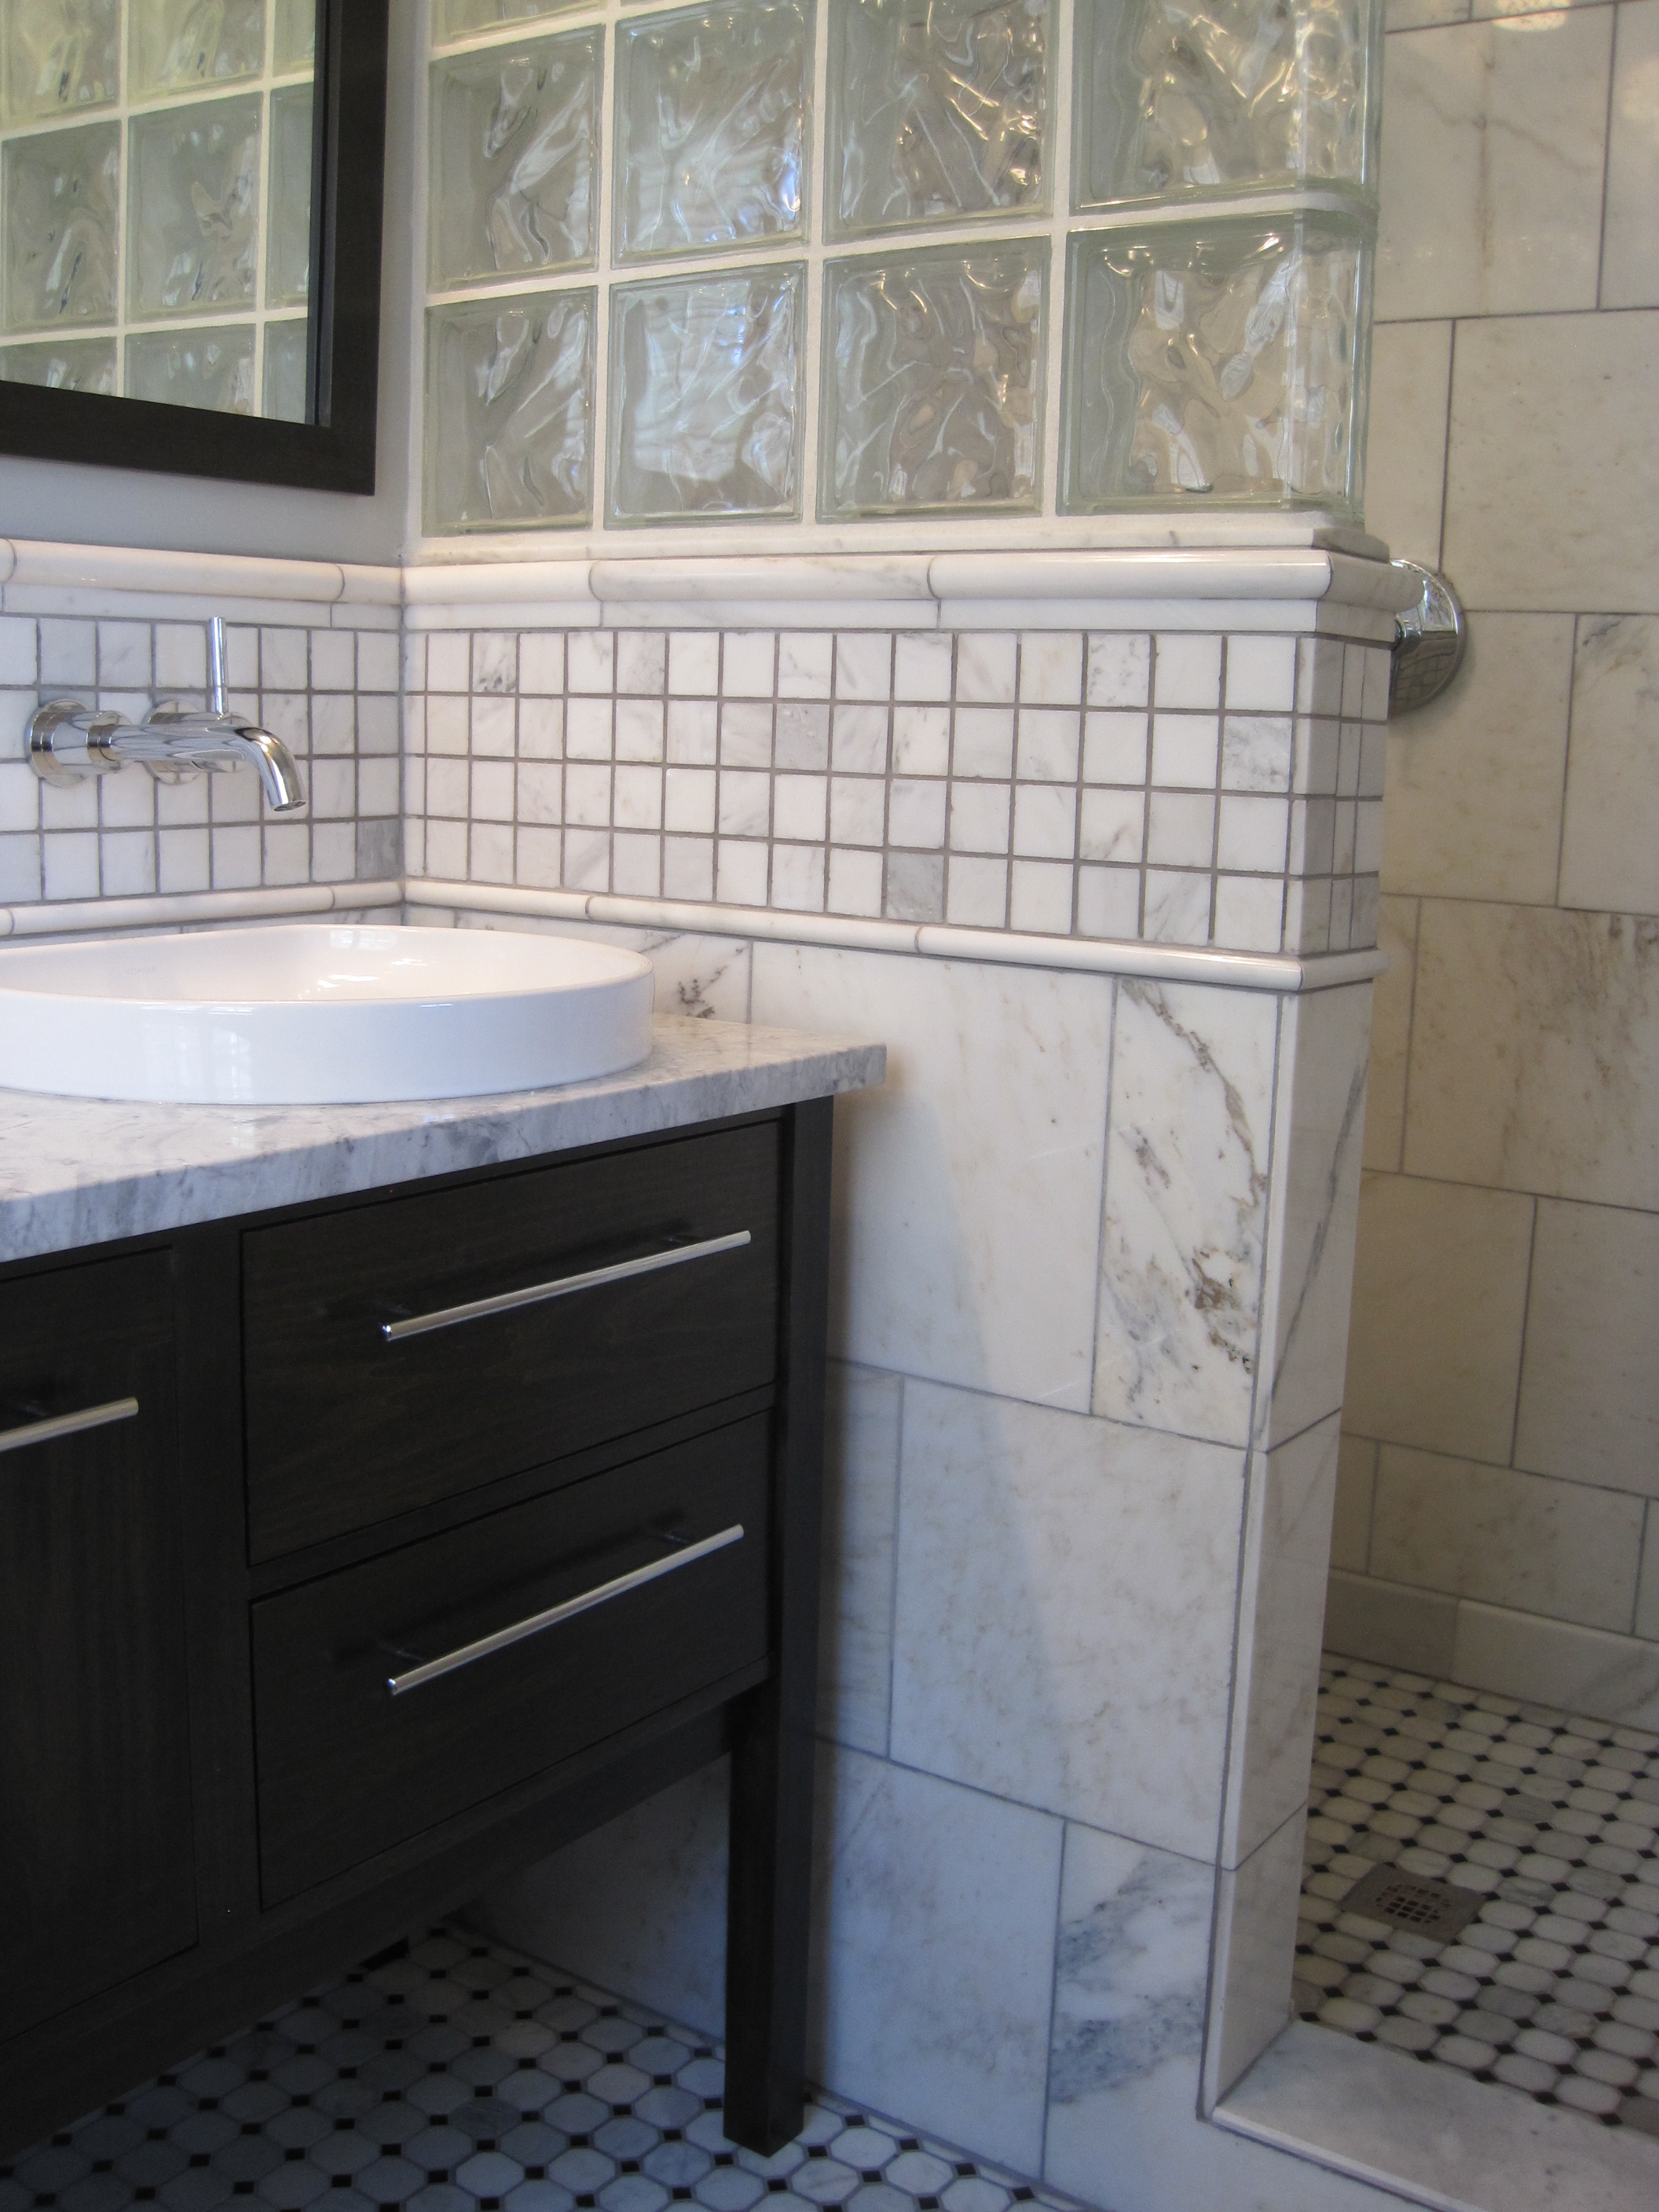 A Small Bathroom - flourish 1 Inch Gap Between Vanity And Wall